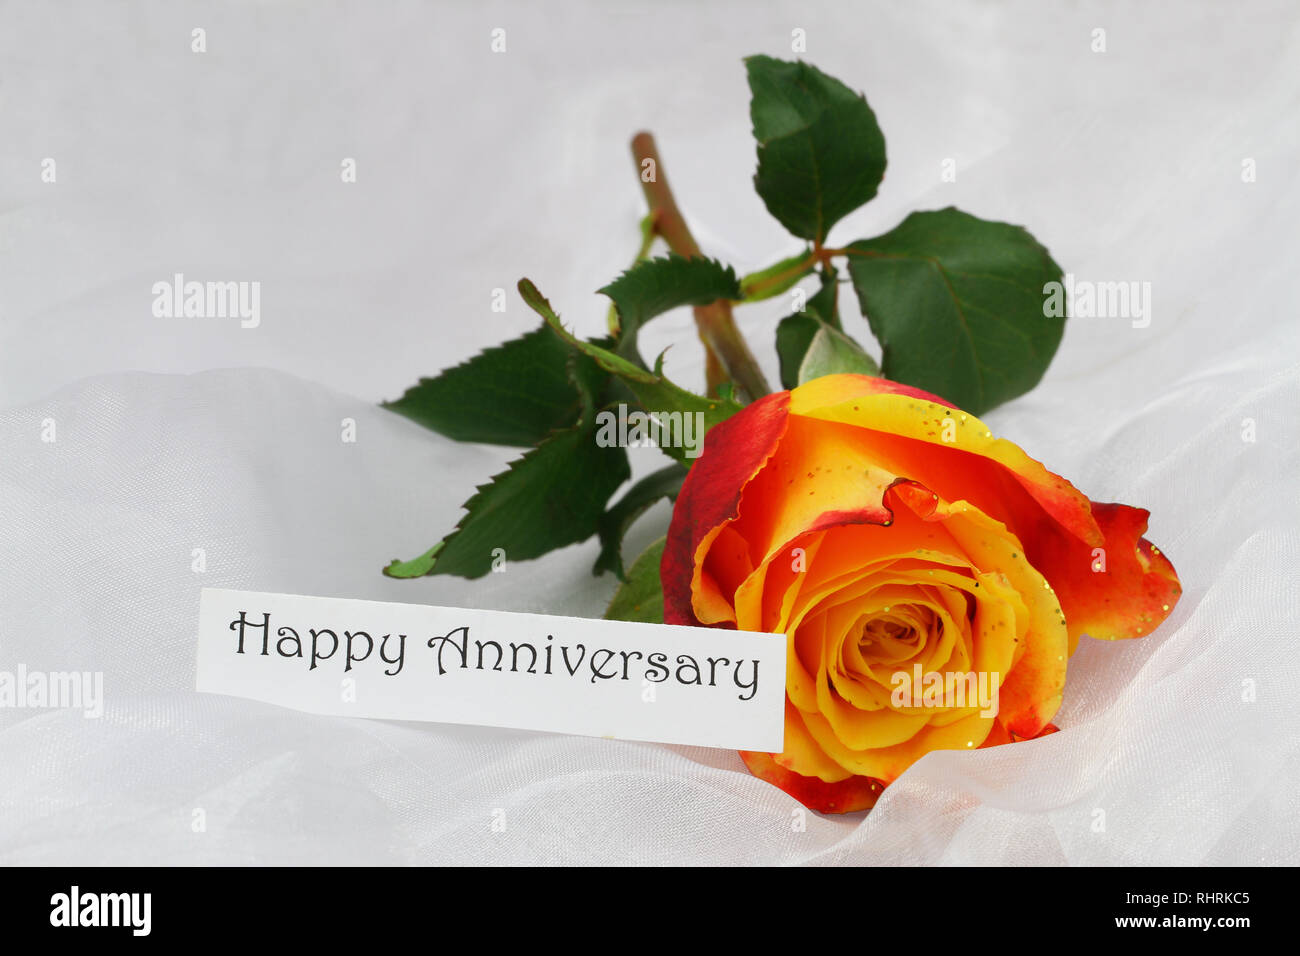 Feliz Aniversario tarjeta con uno rojo y rosa amarilla salpicada con purpurina sobre textiles blanco Foto de stock